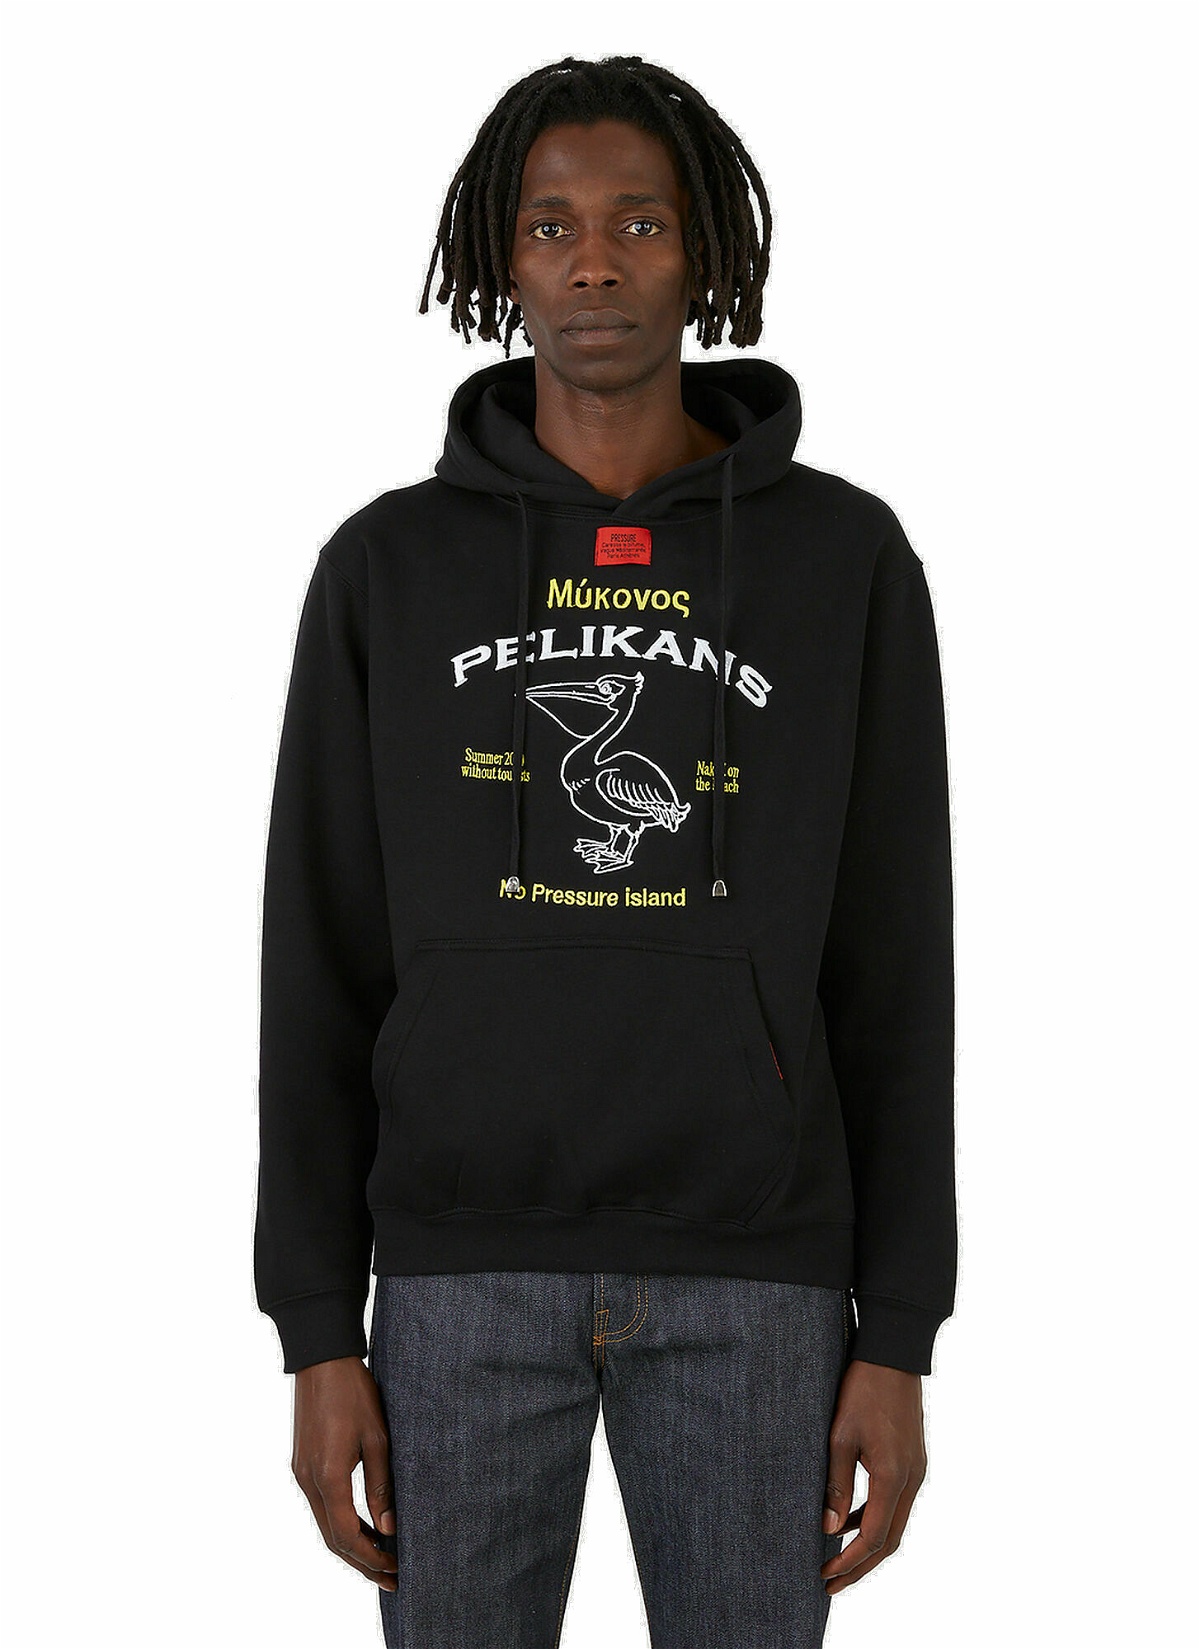 Photo: Pelikan Pressure Hooded Sweatshirt in Black